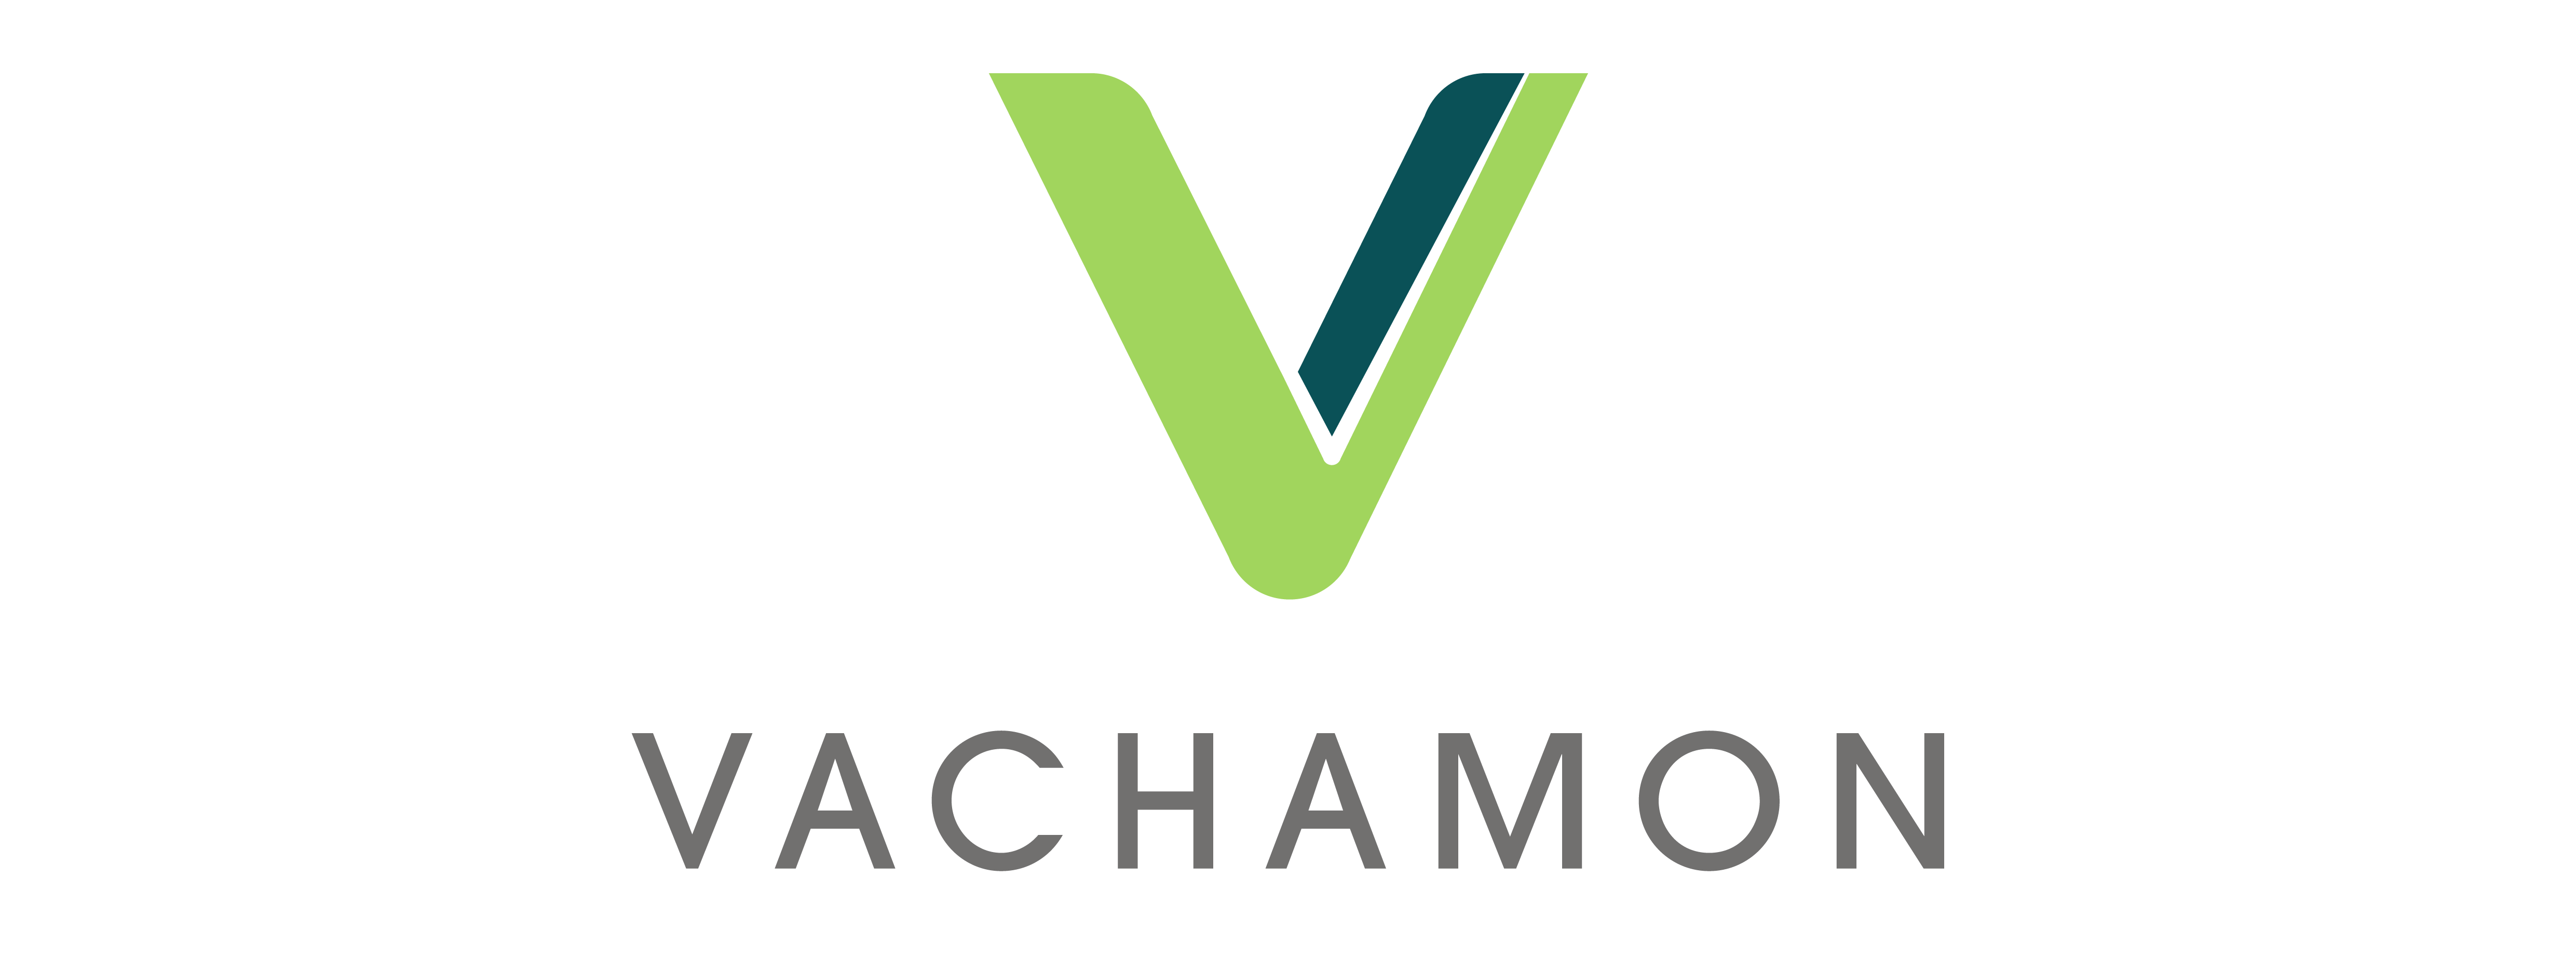 Vachamon Food Ltd.